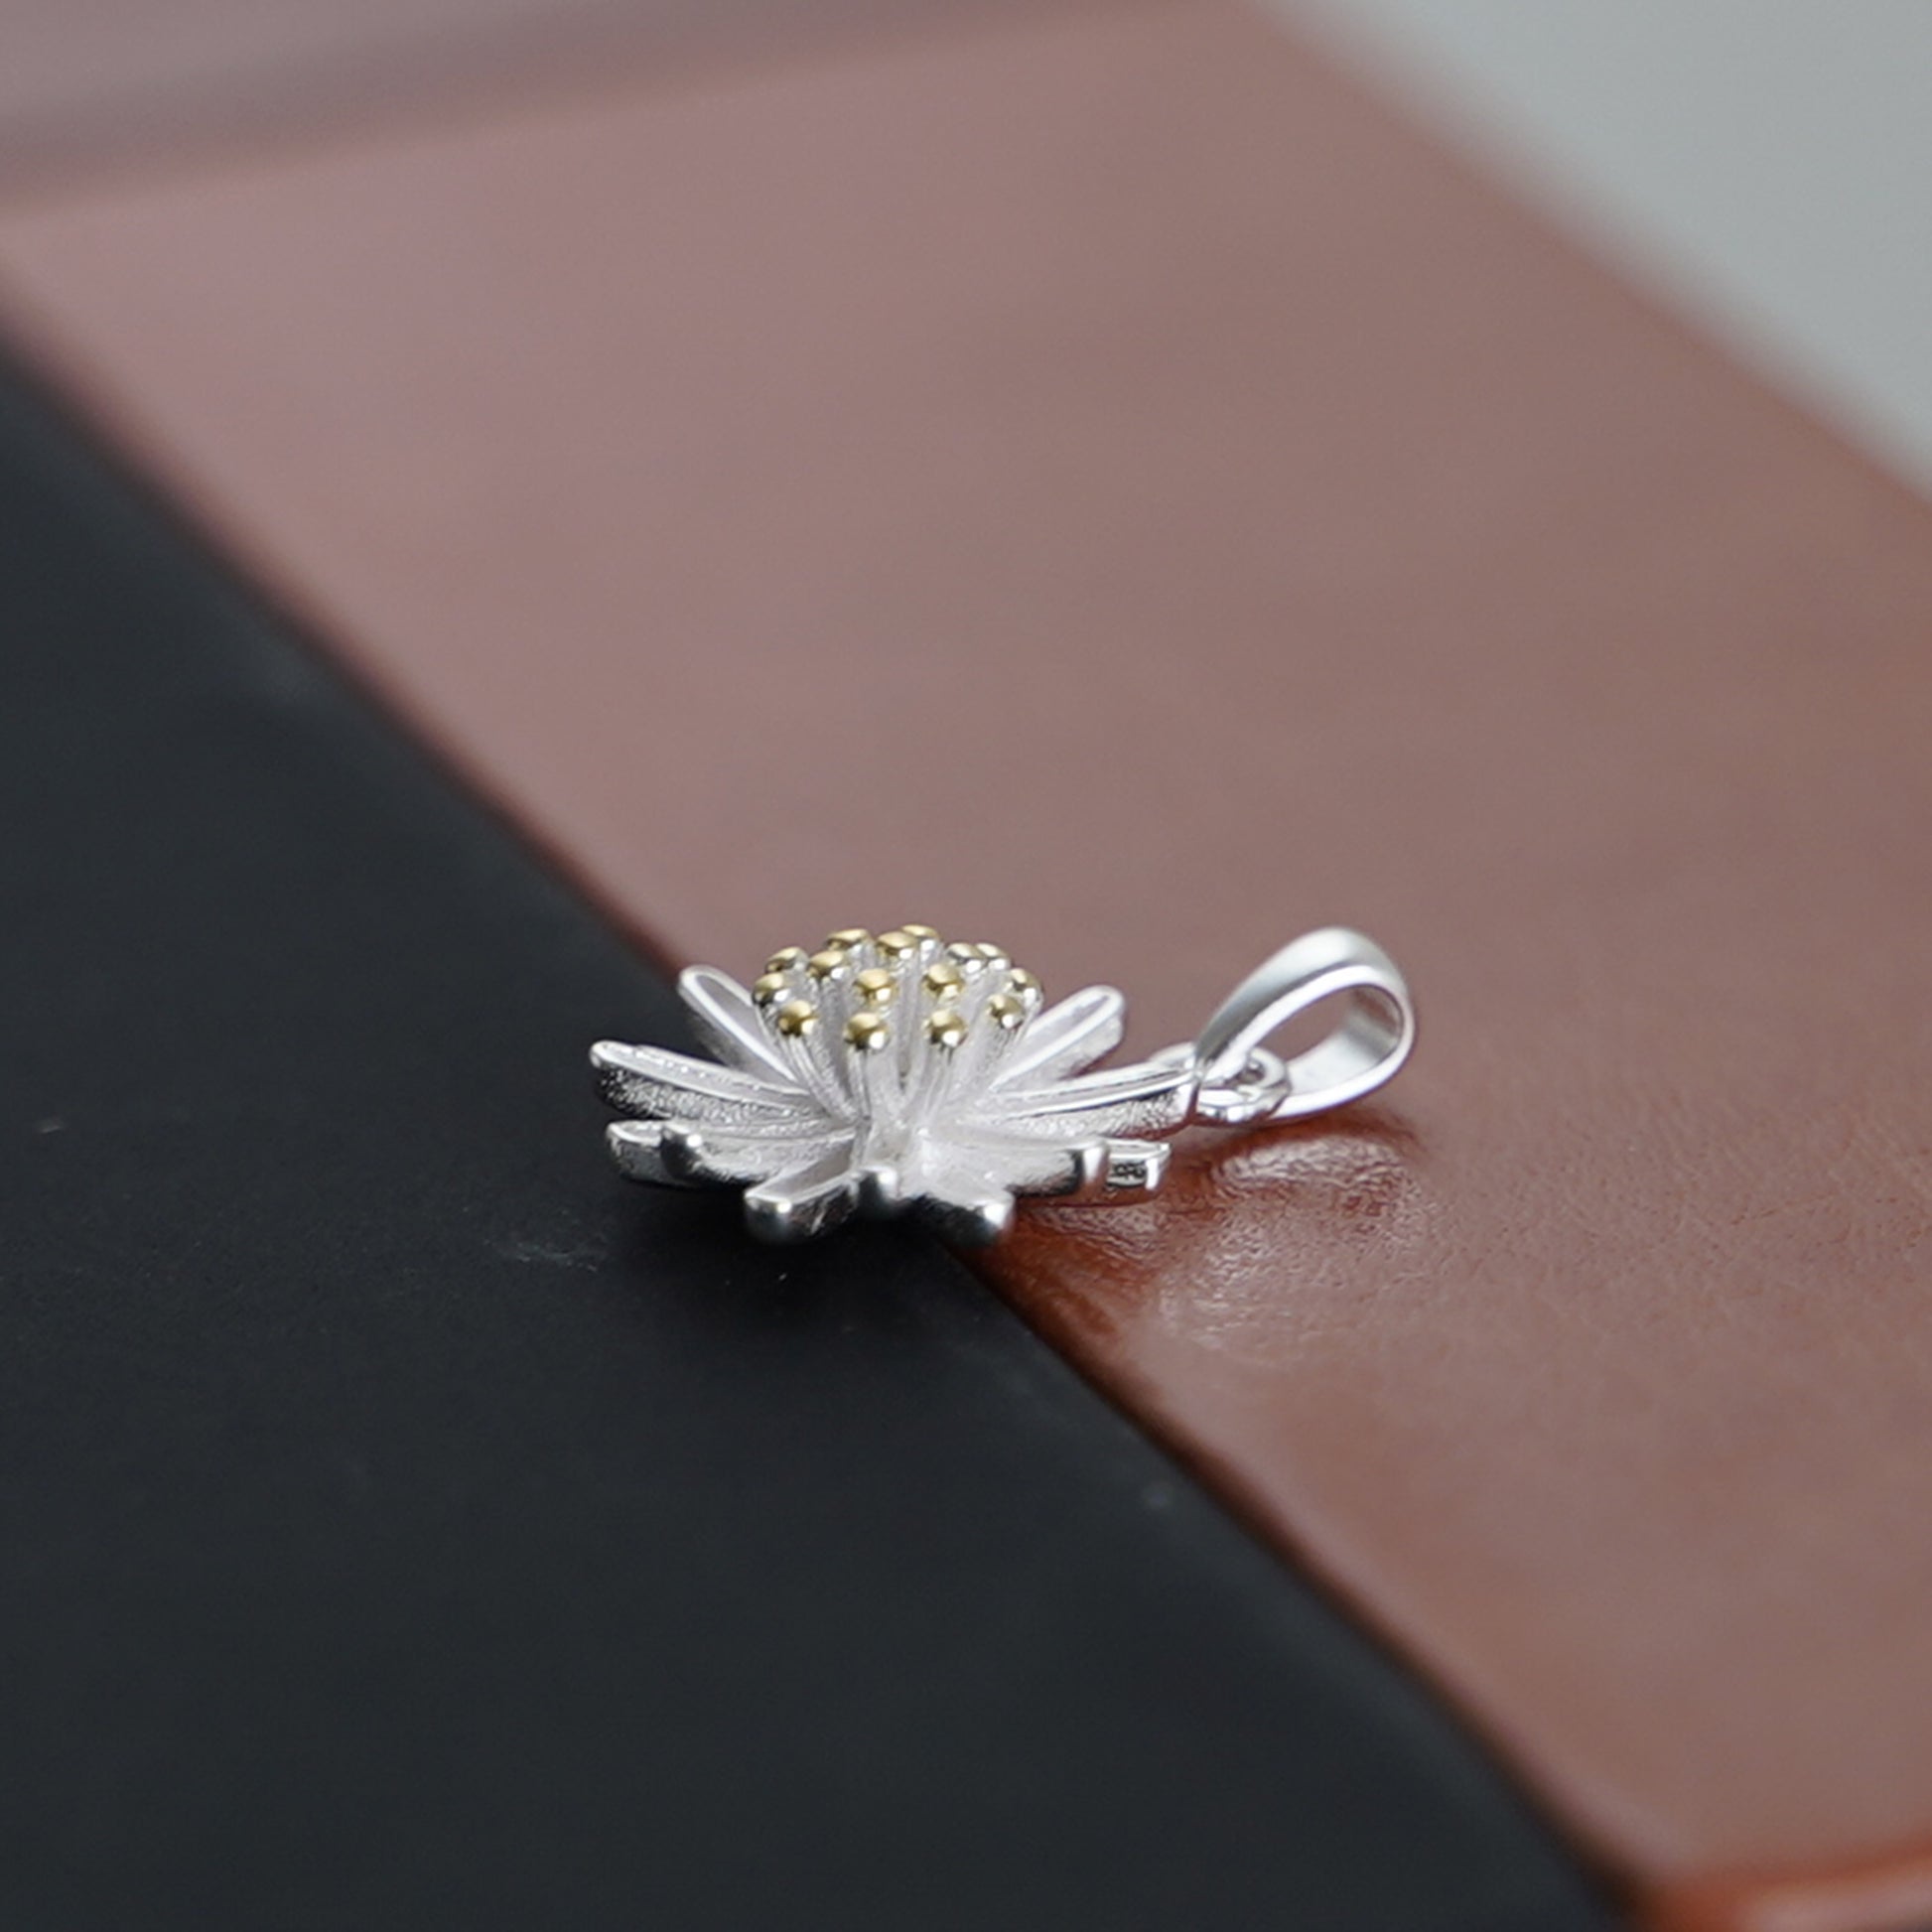 Sterling Silver 12.5mm Daisy Sun Flower Pendant Necklace - sugarkittenlondon